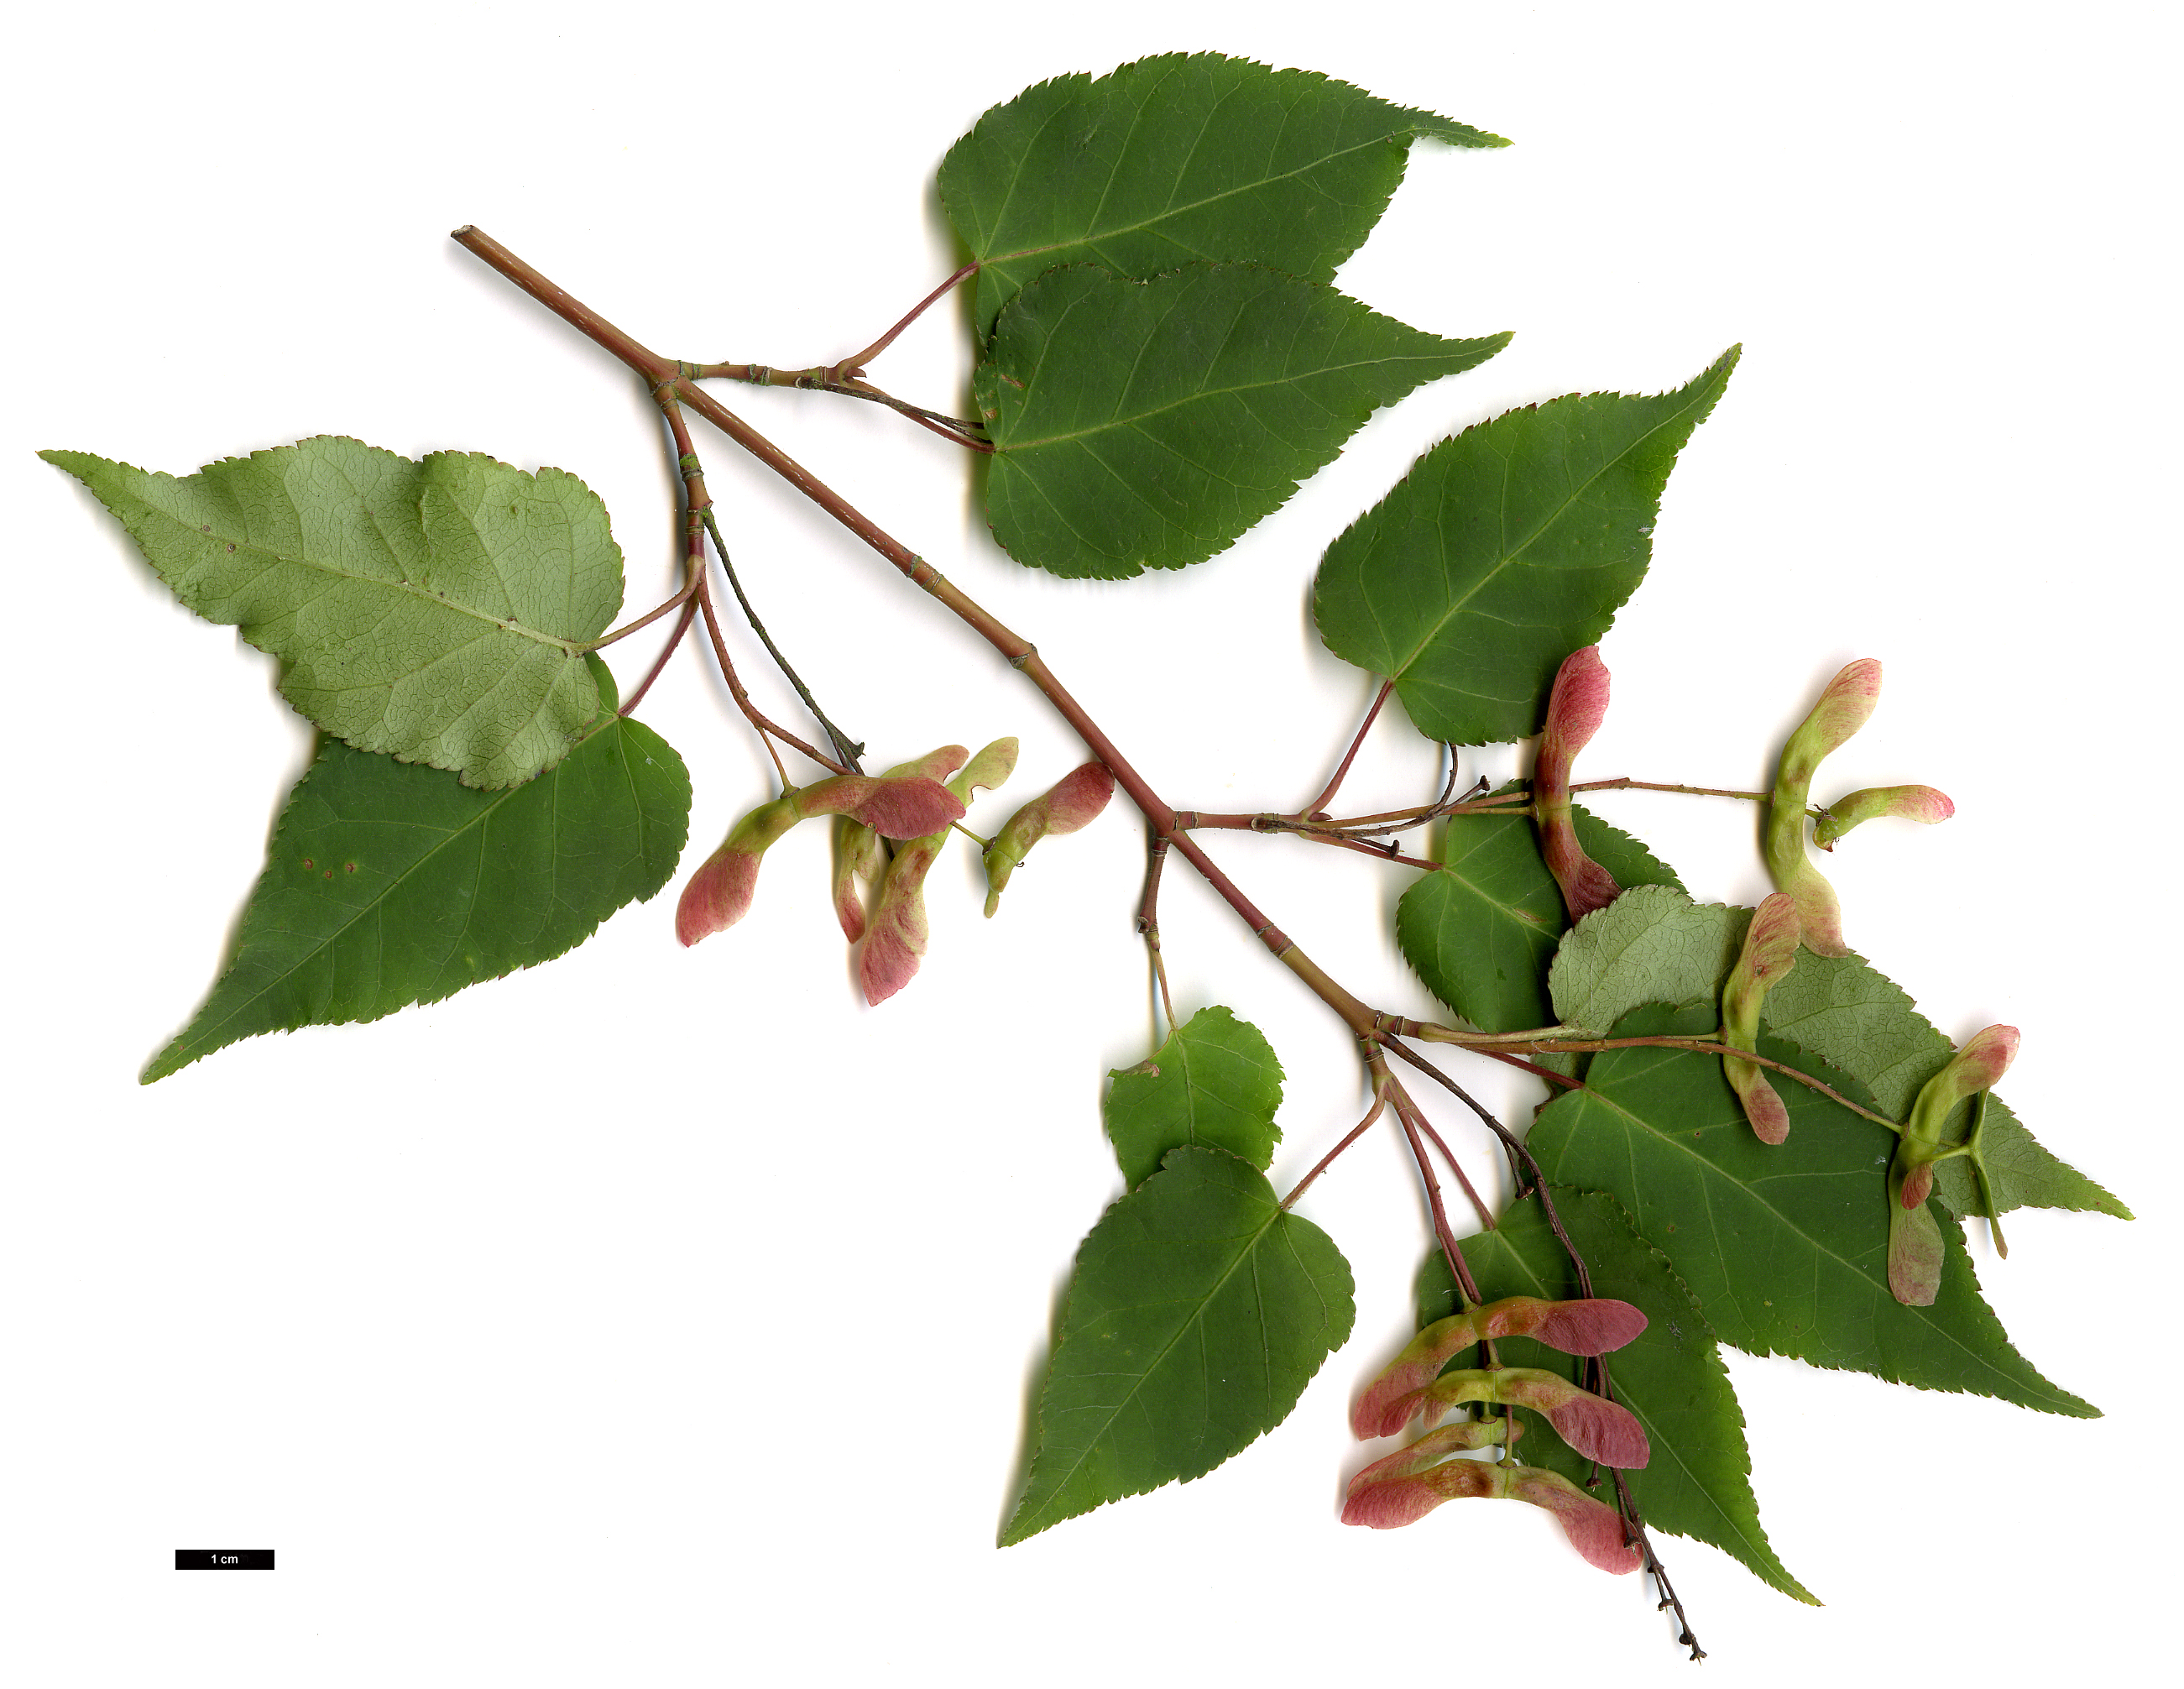 High resolution image: Family: Sapindaceae - Genus: Acer - Taxon: crataegifolium